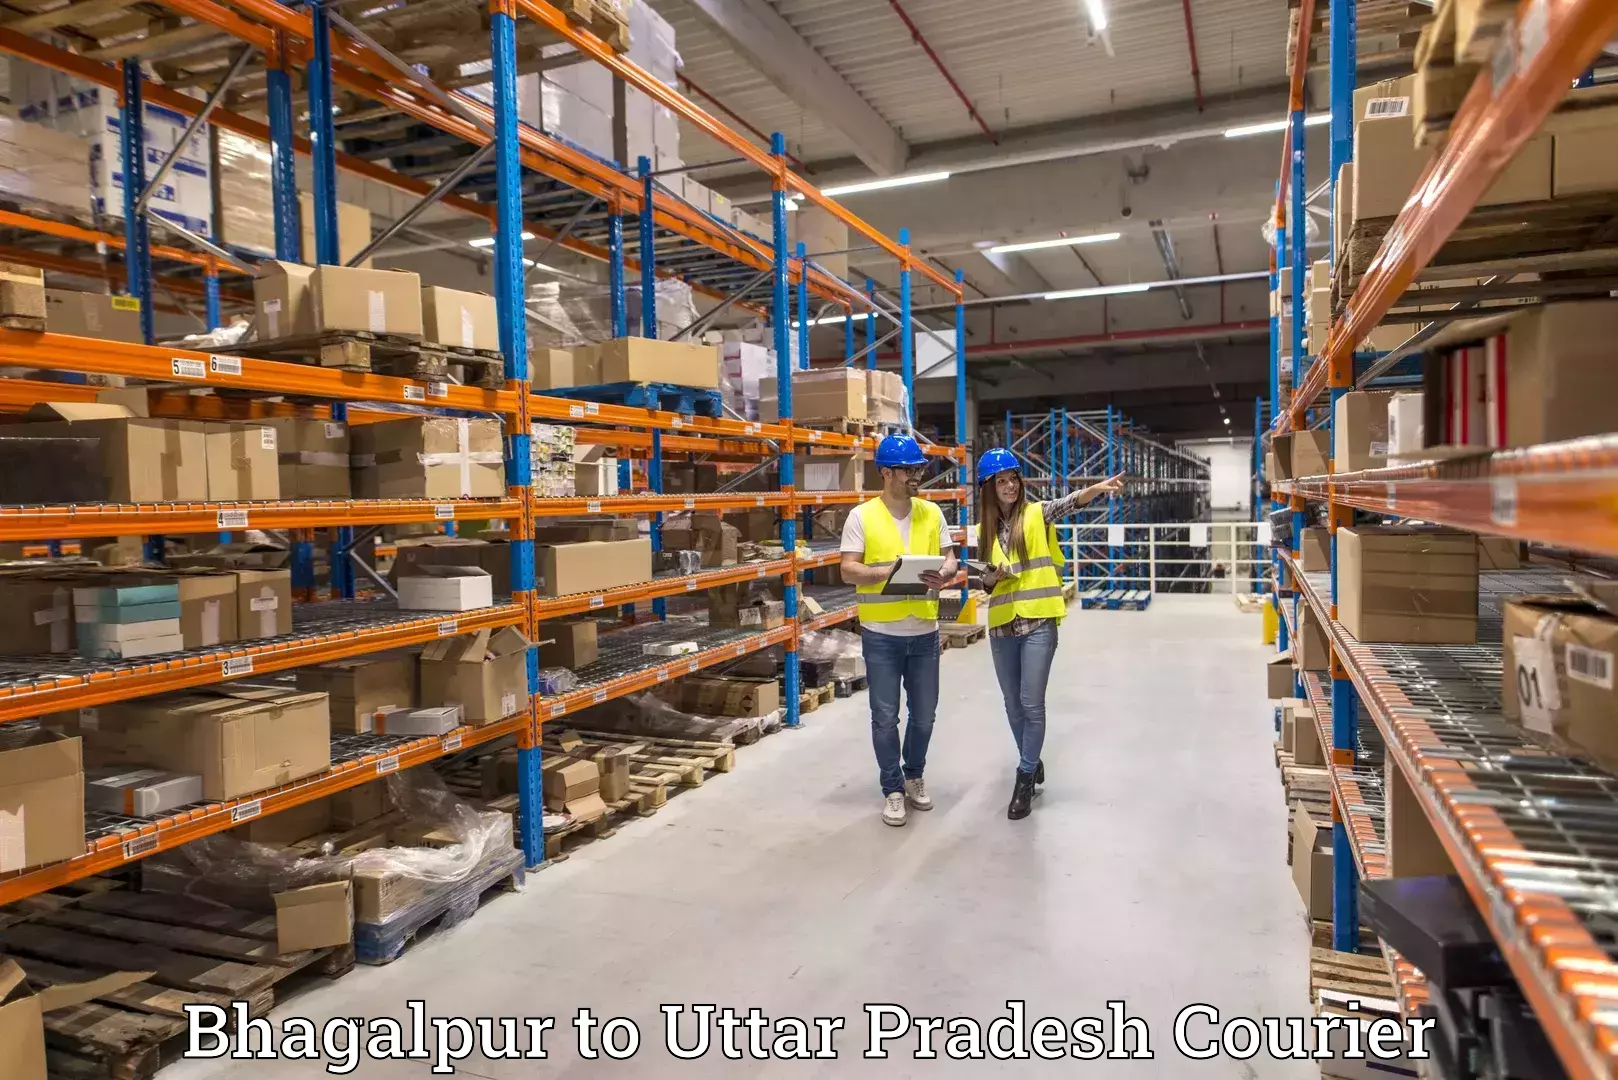 Courier service efficiency Bhagalpur to Uttar Pradesh